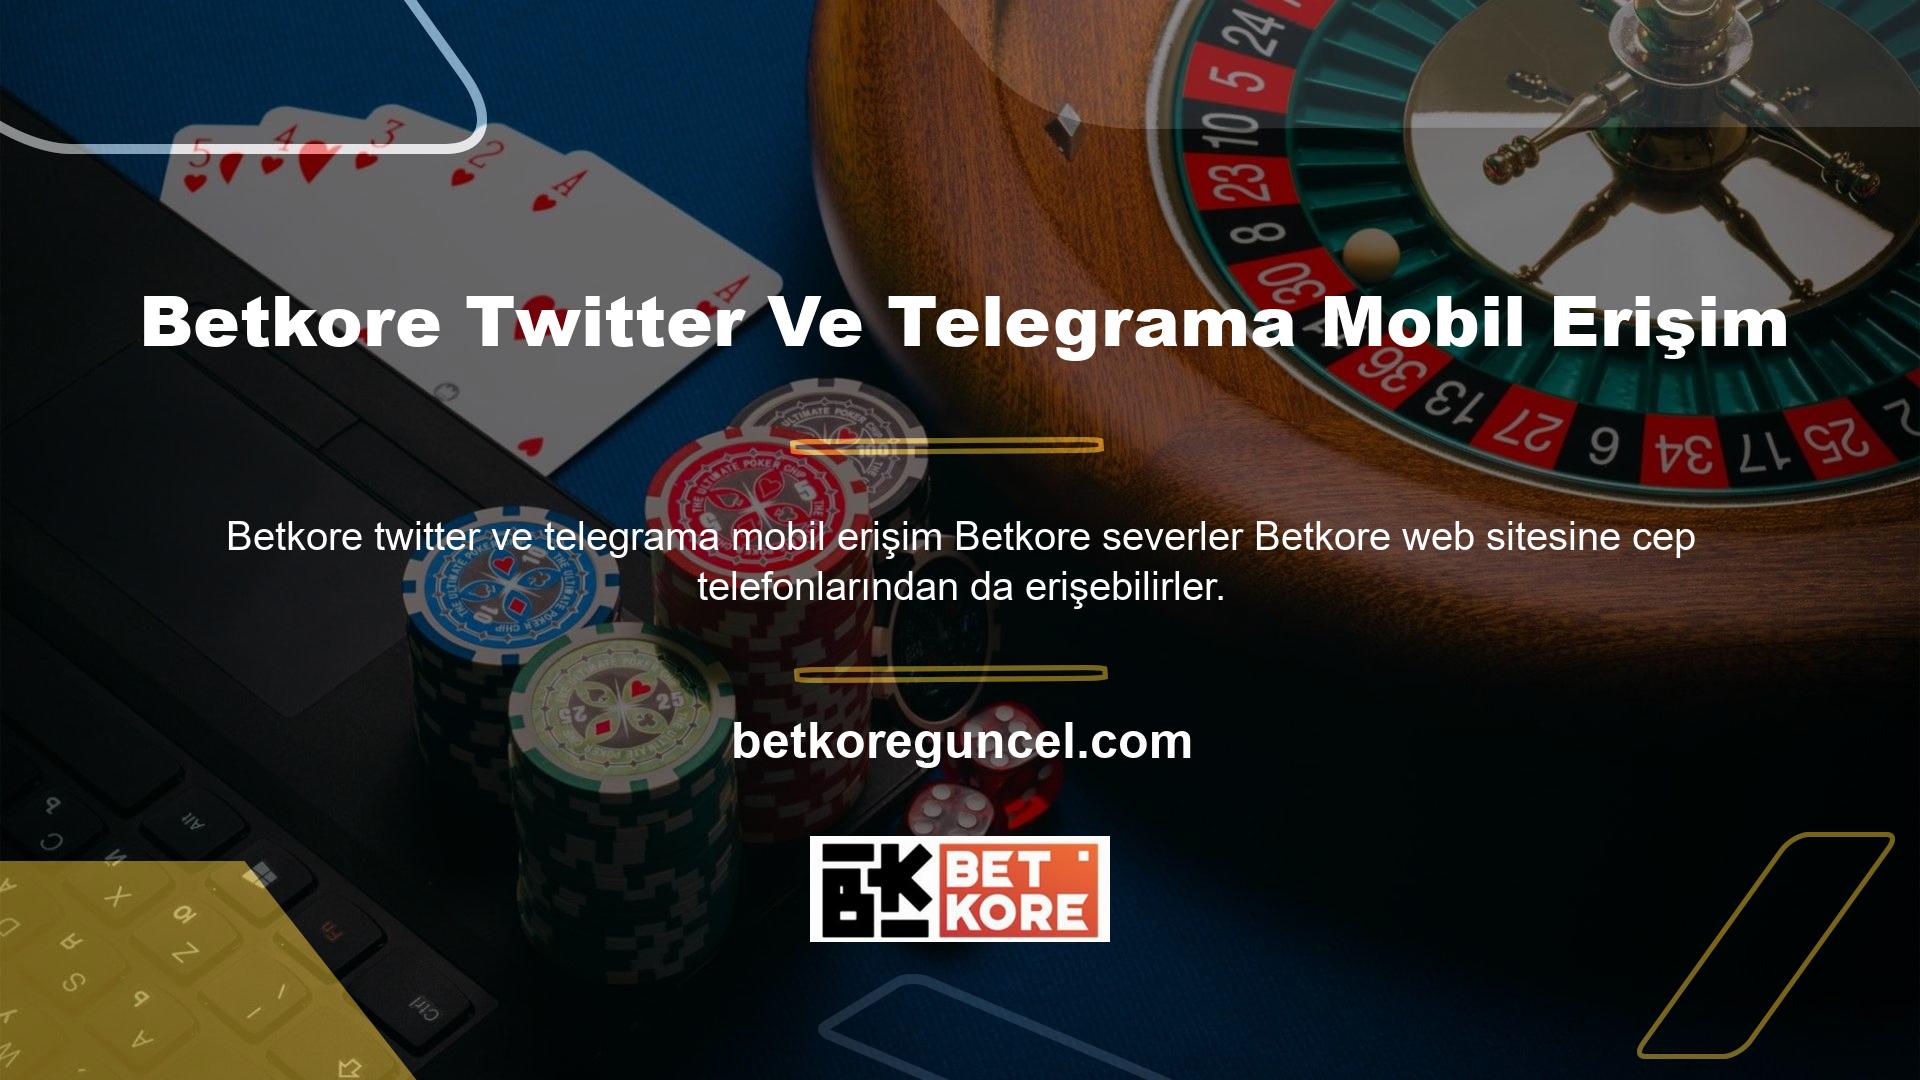 Bu, ilgili hizmetleri Betkore Mobil Erişimin Twitter ve Telegram bölümlerinde gösterecektir